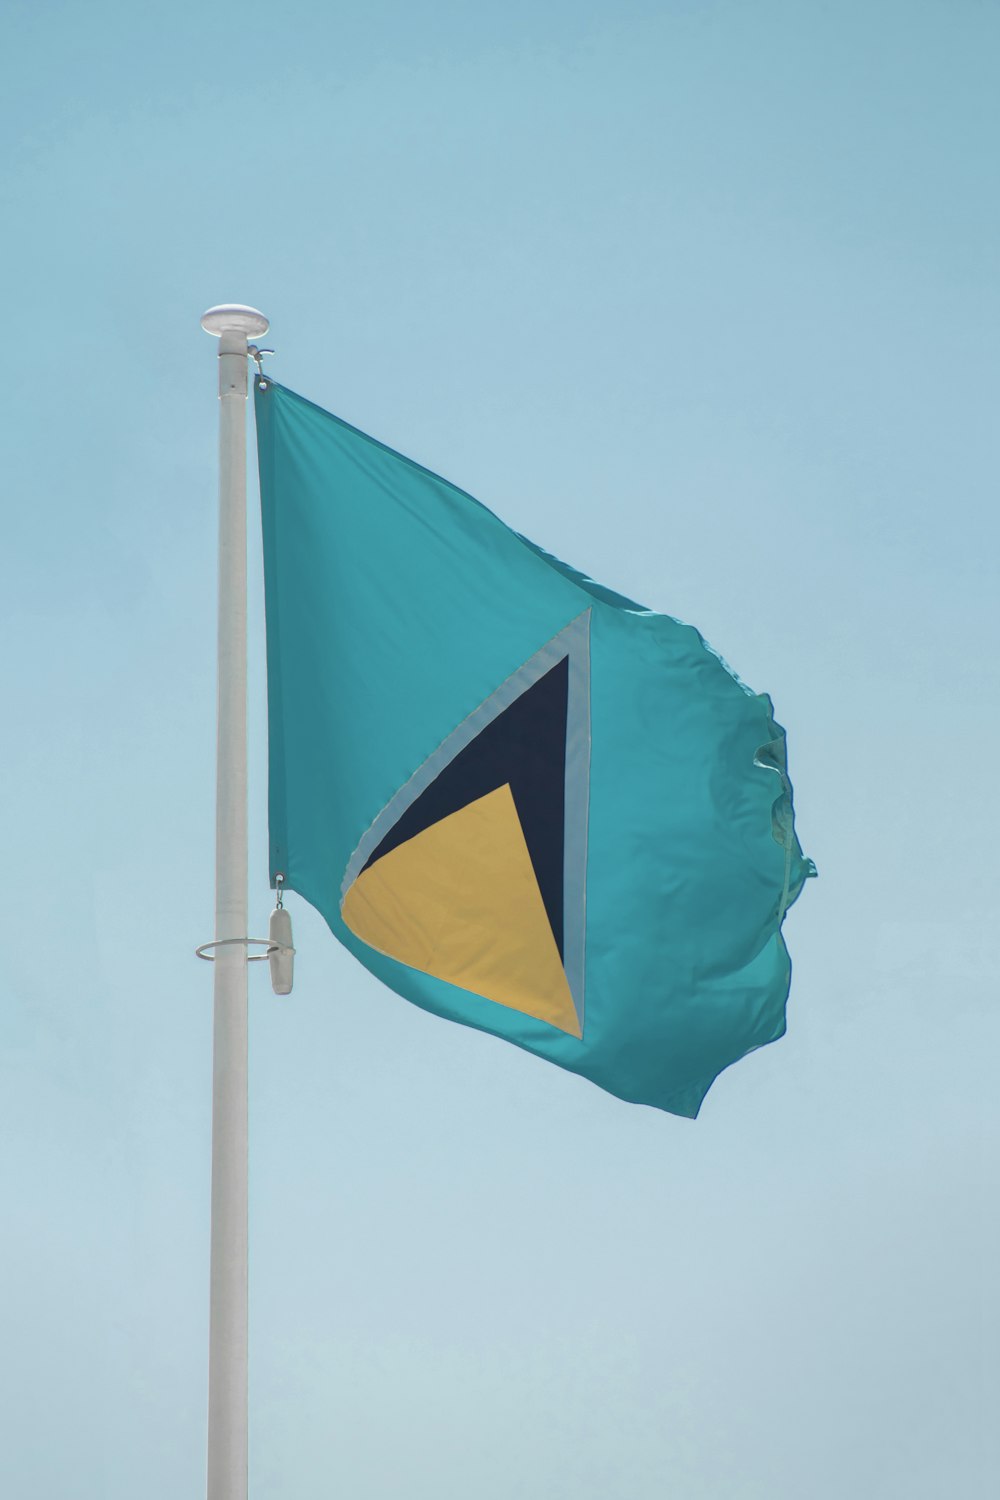 Imágenes de Bandera De Santa Lucia | Descarga imágenes gratuitas en Unsplash